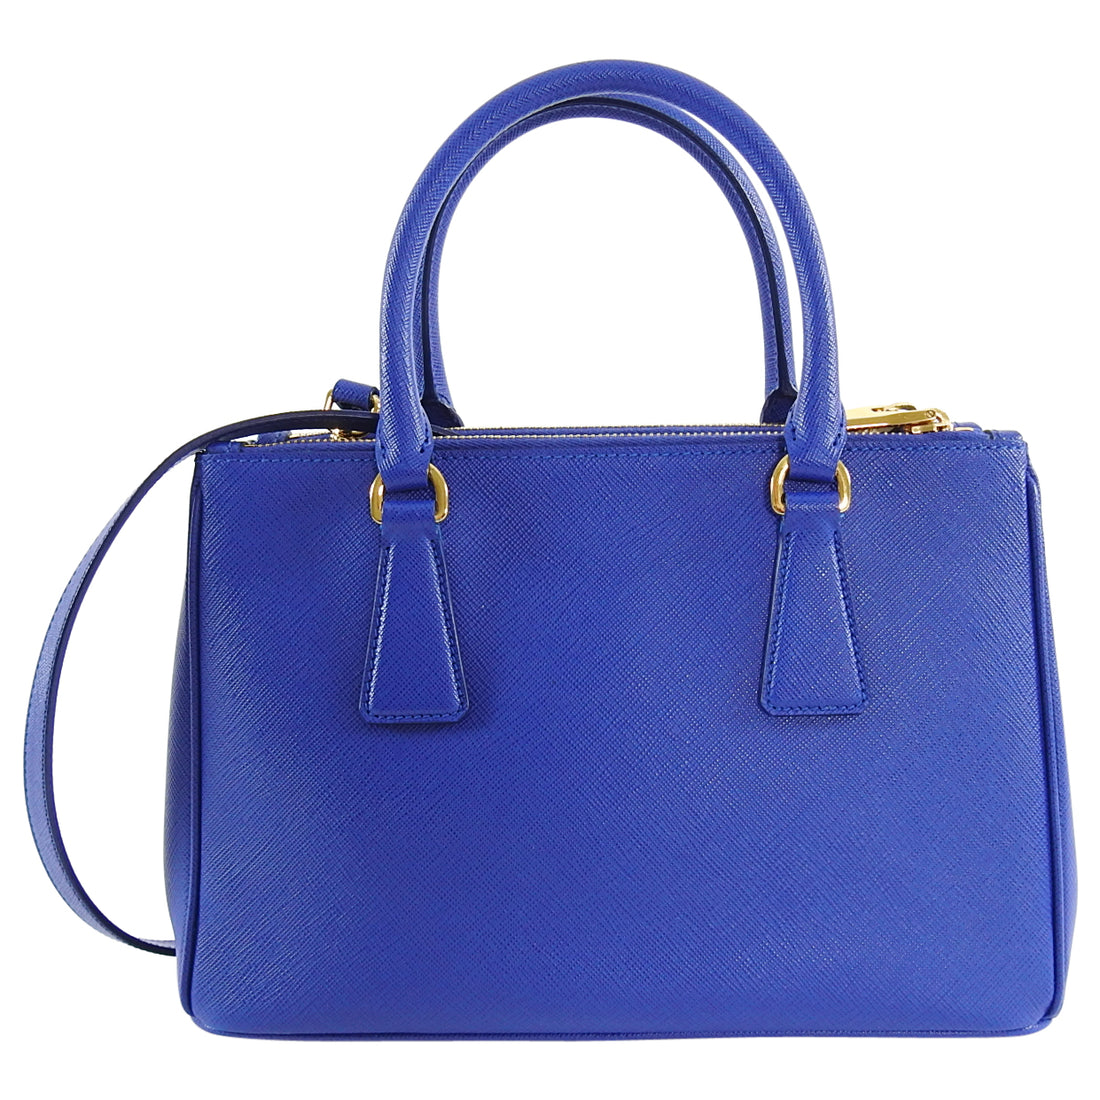 Prada, Bags, Authentic Prada Galleria Saffiano Leather Cobalt Blue